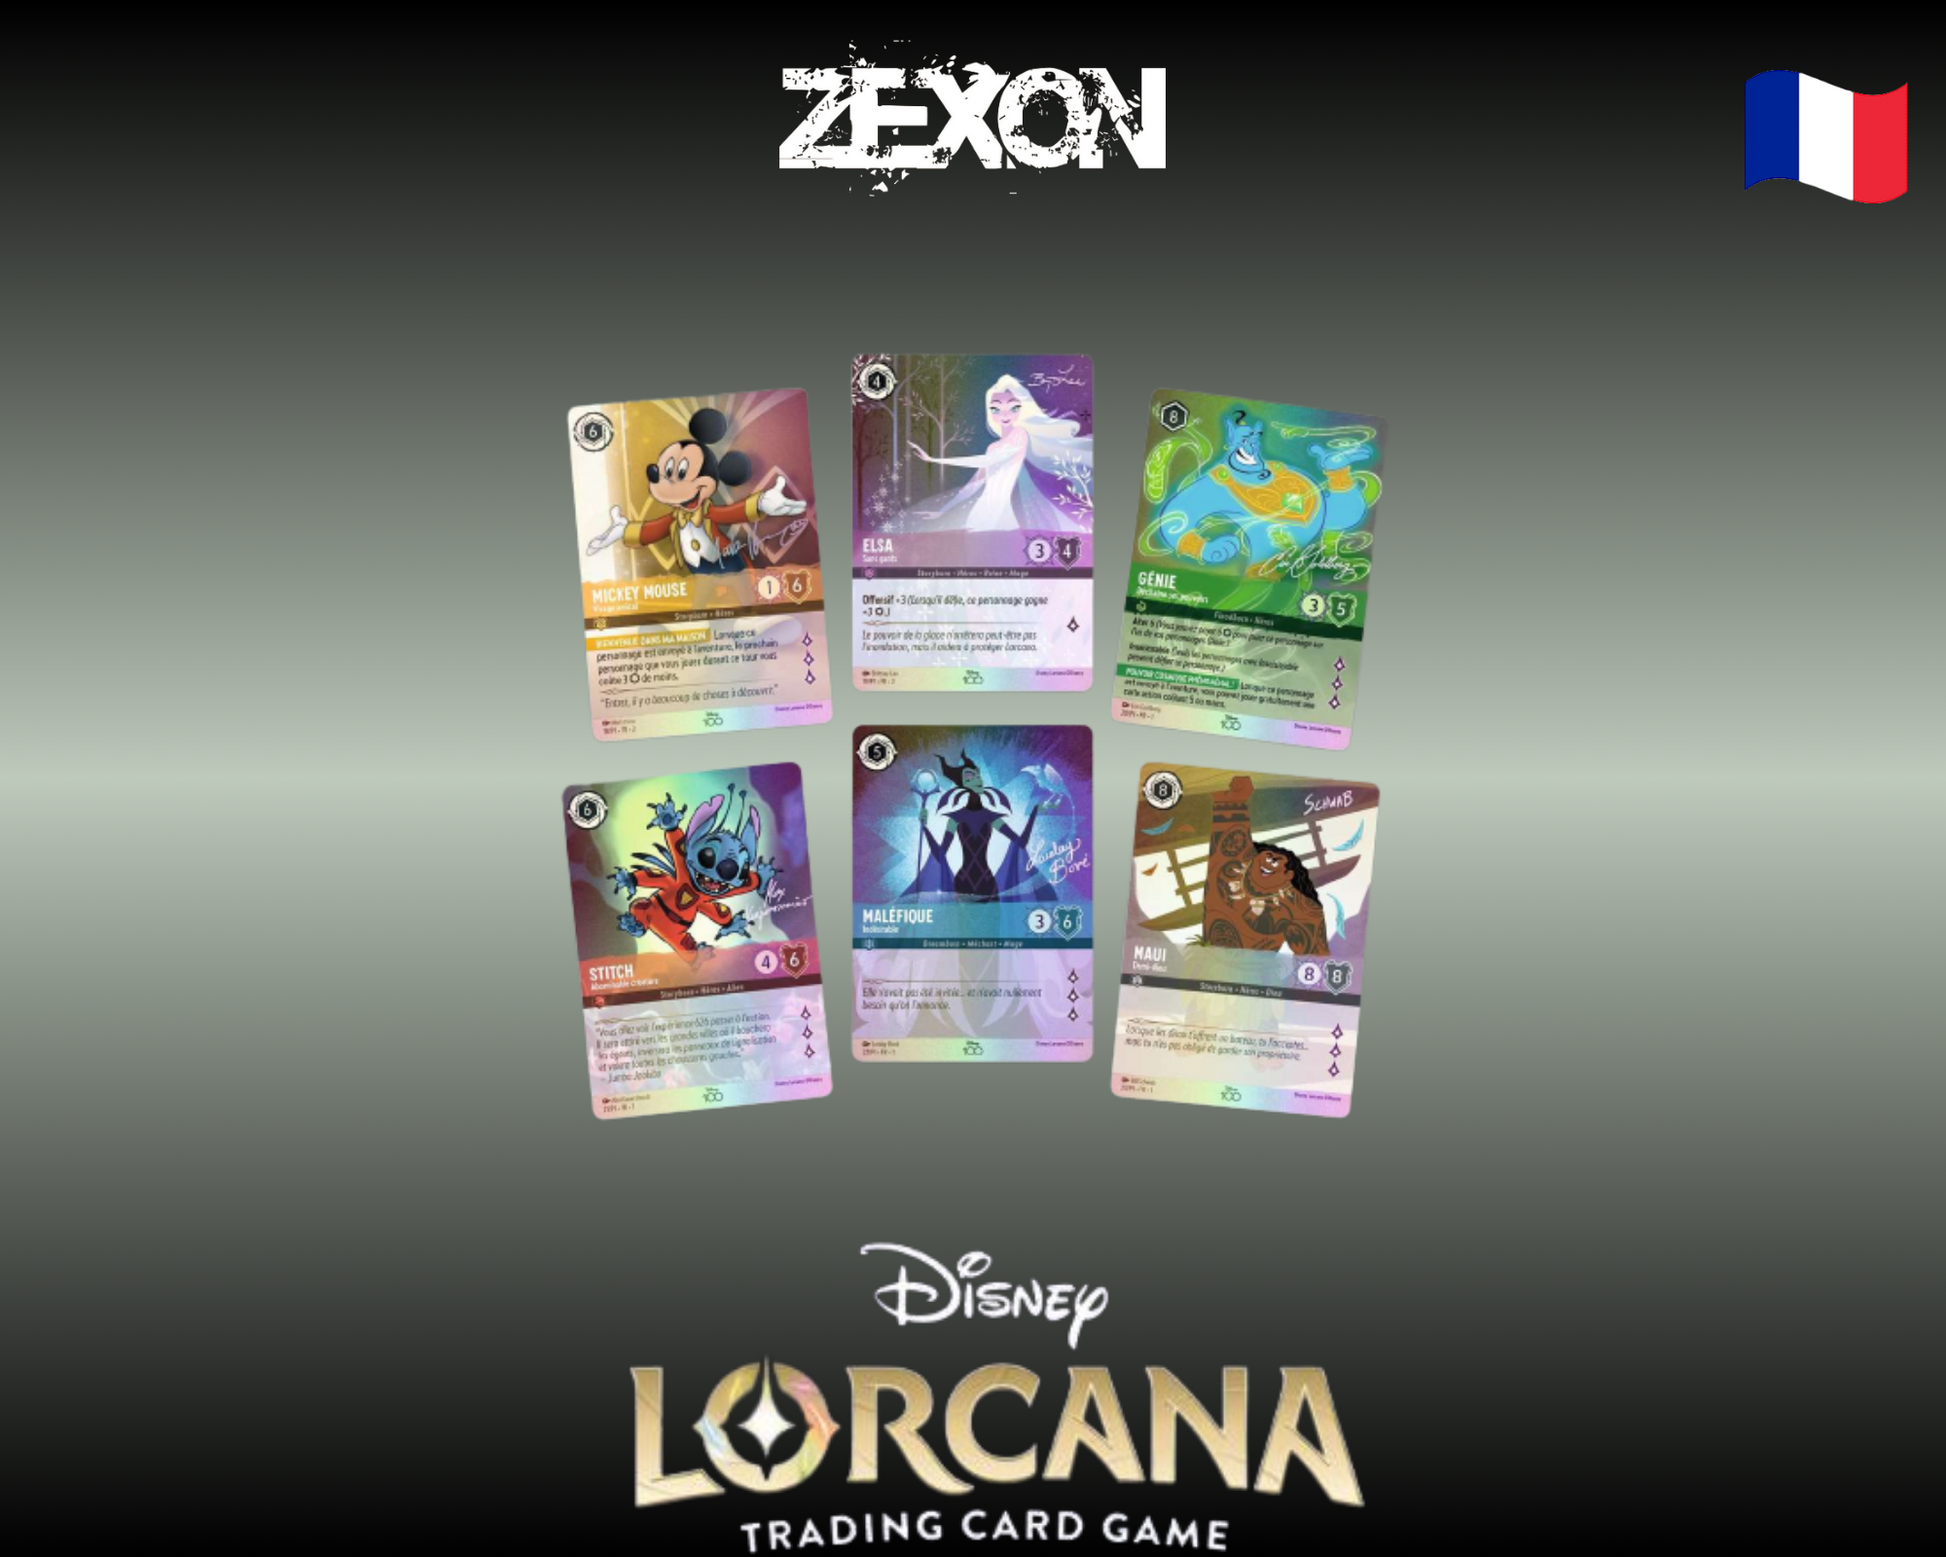 Disney Lorcana set2: Coffret Disney100 – ZeXon